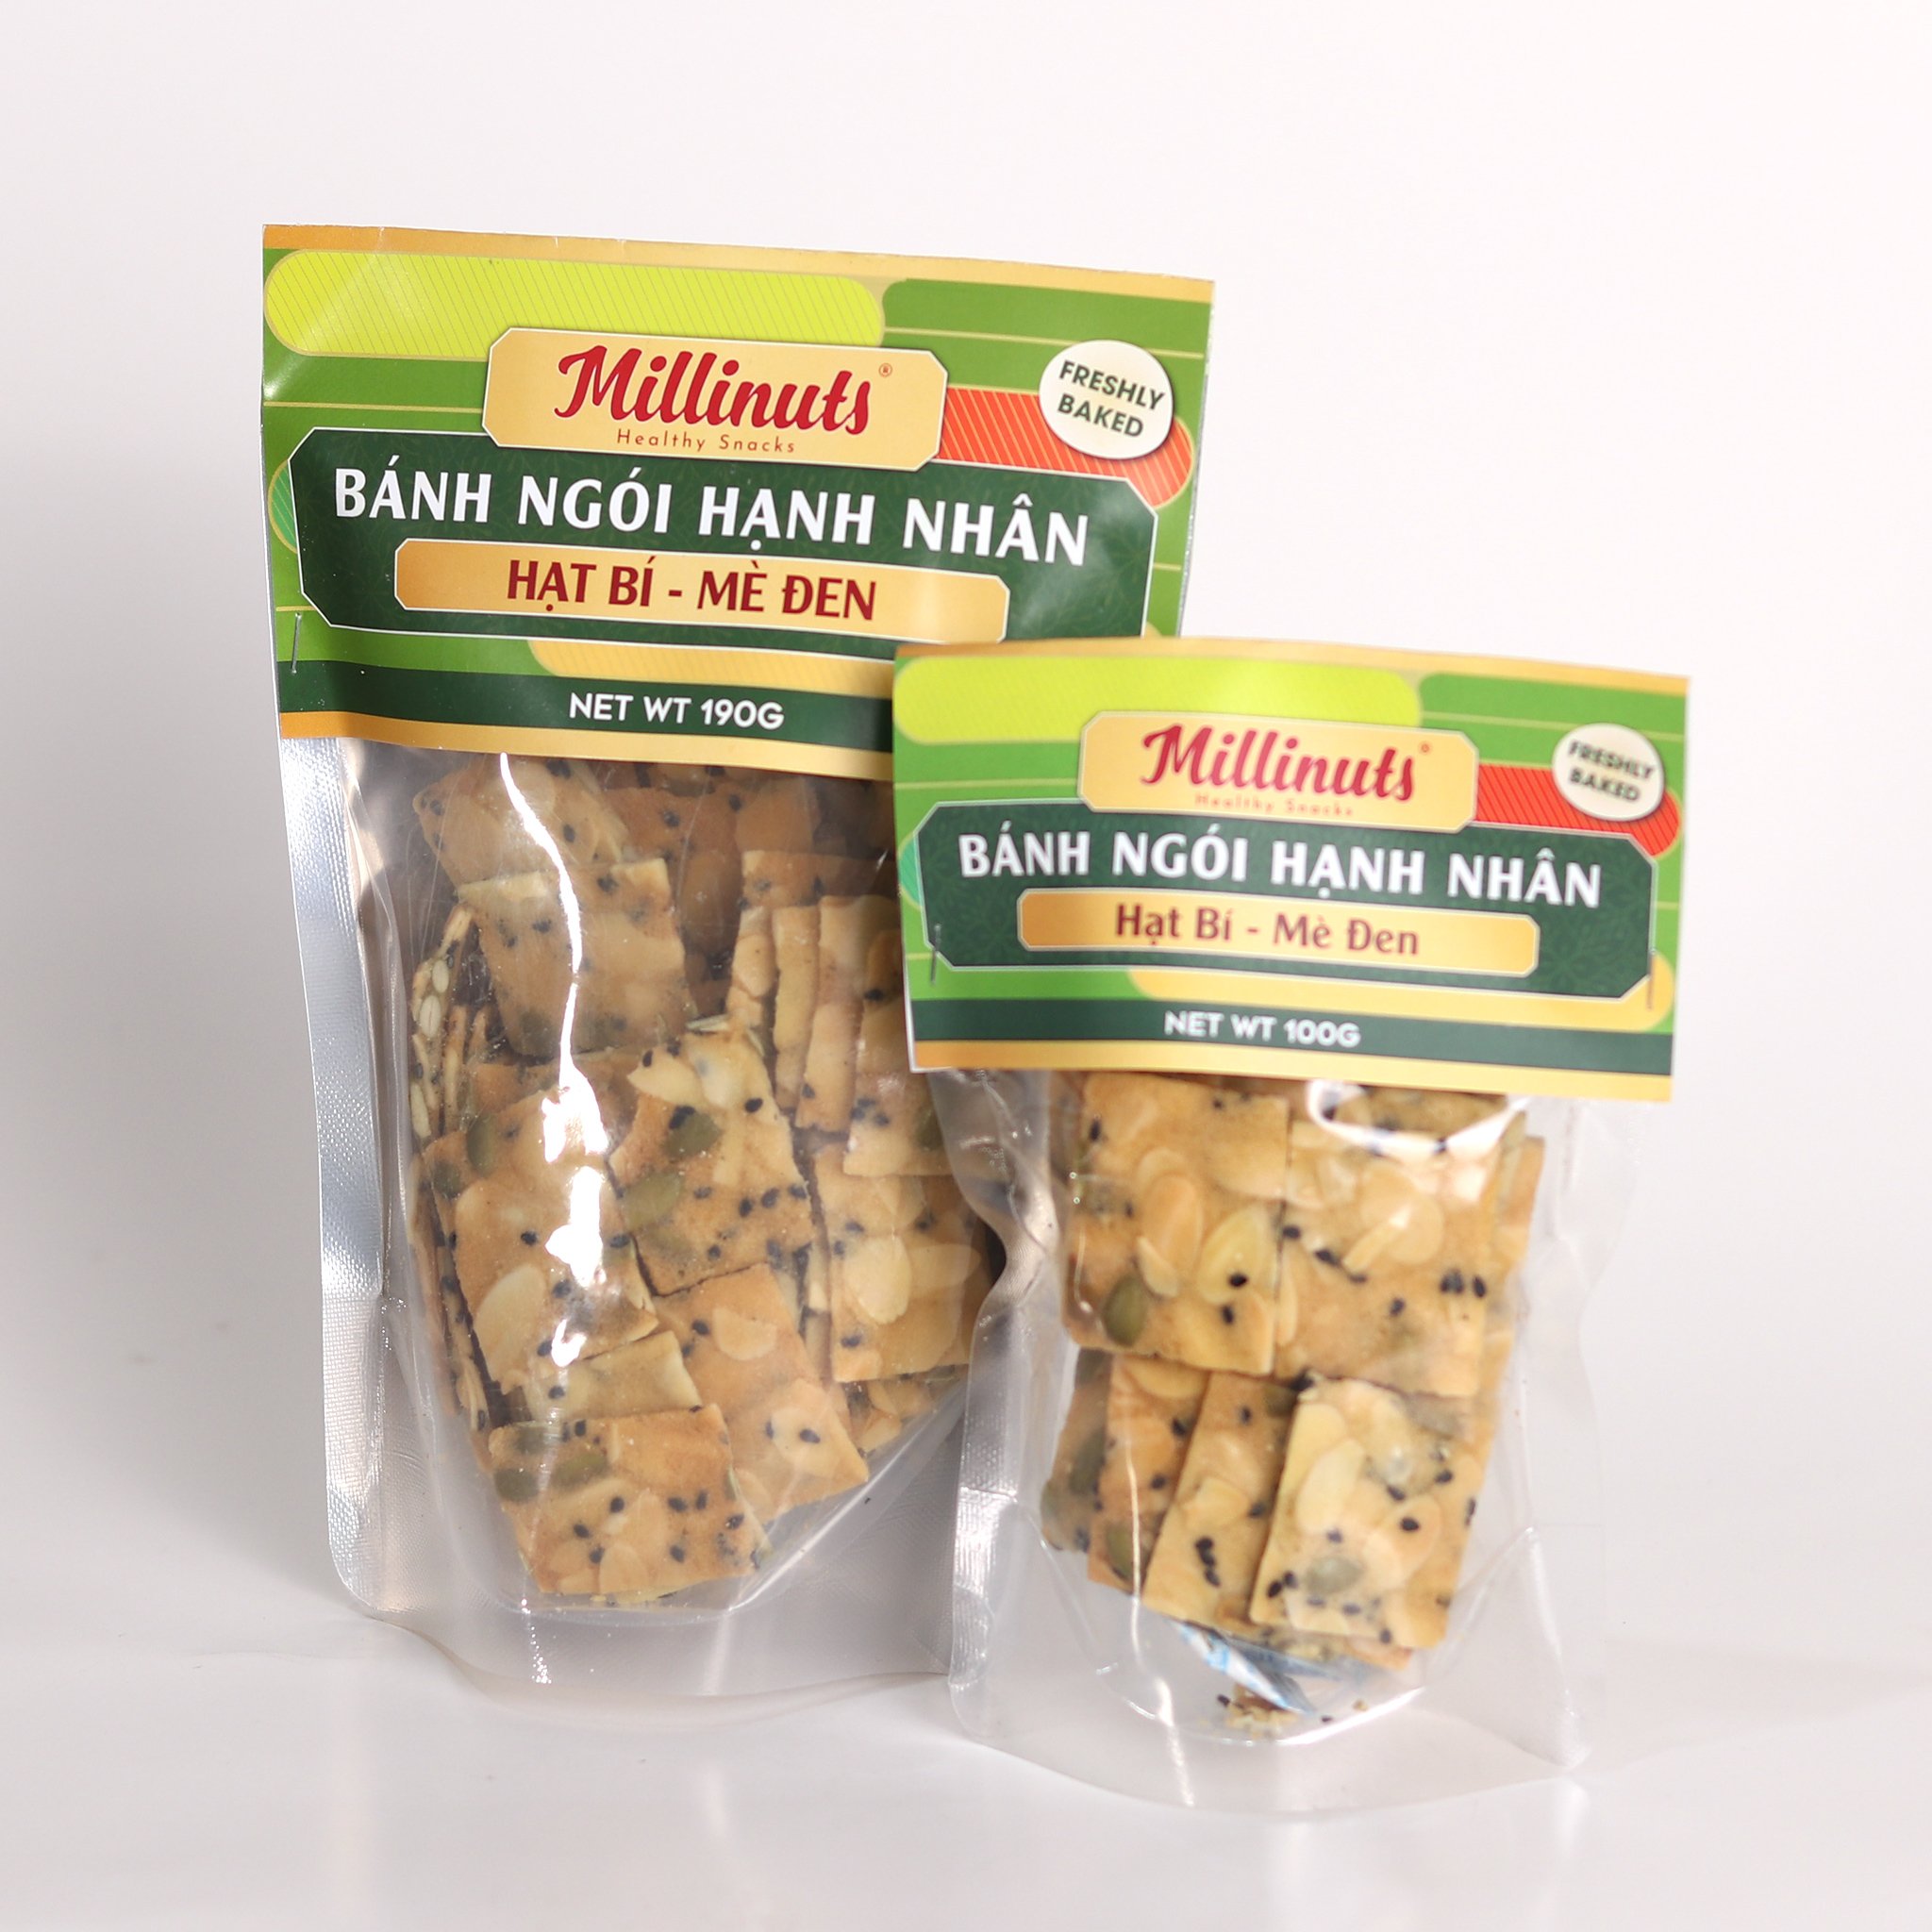 Millinuts - Bánh Ngói Hạnh Nhân - Hạt Bí - Mè Đen 190g